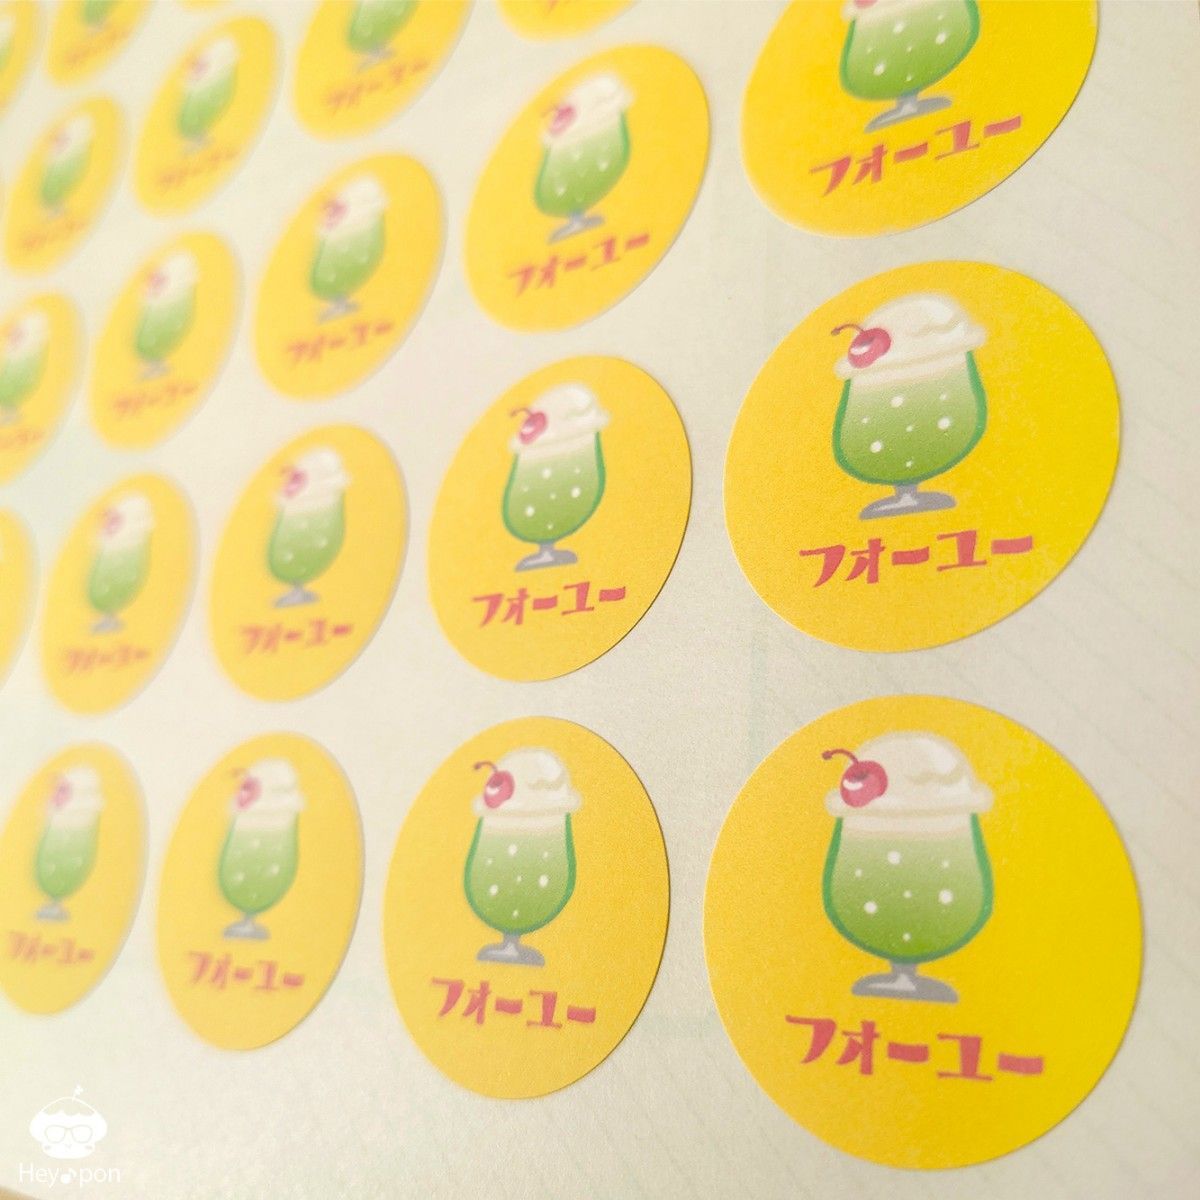 【メロンクリームソーダ】フォーユーシール 48片組み合わせOK！